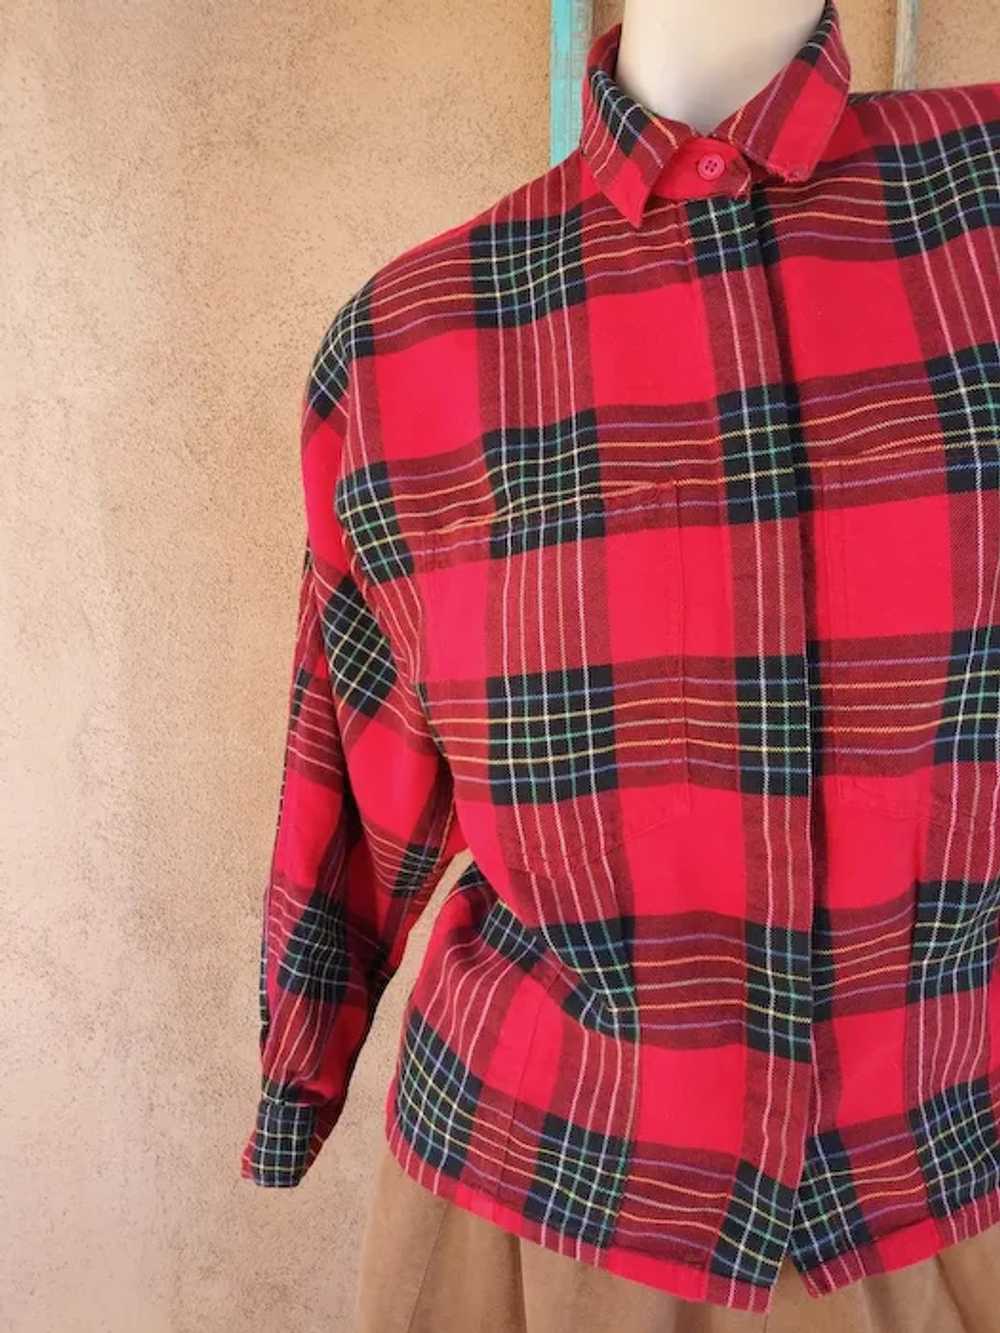 1980s Red Plaid Cotton Flannel Shirt Blouse Sz S M - image 7